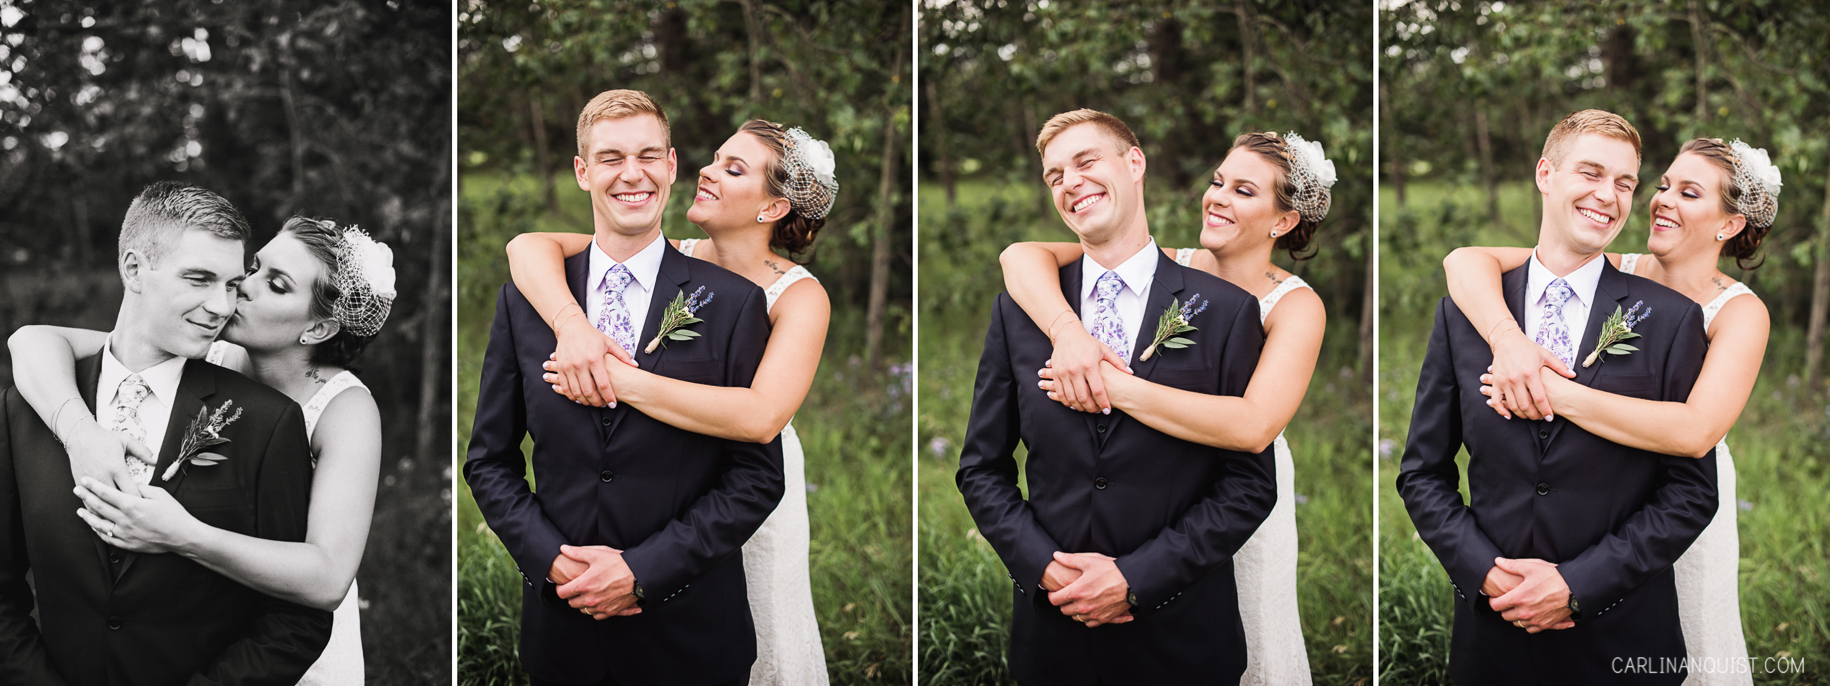 Fun Wedding Photos | Calgary Wedding Photographer